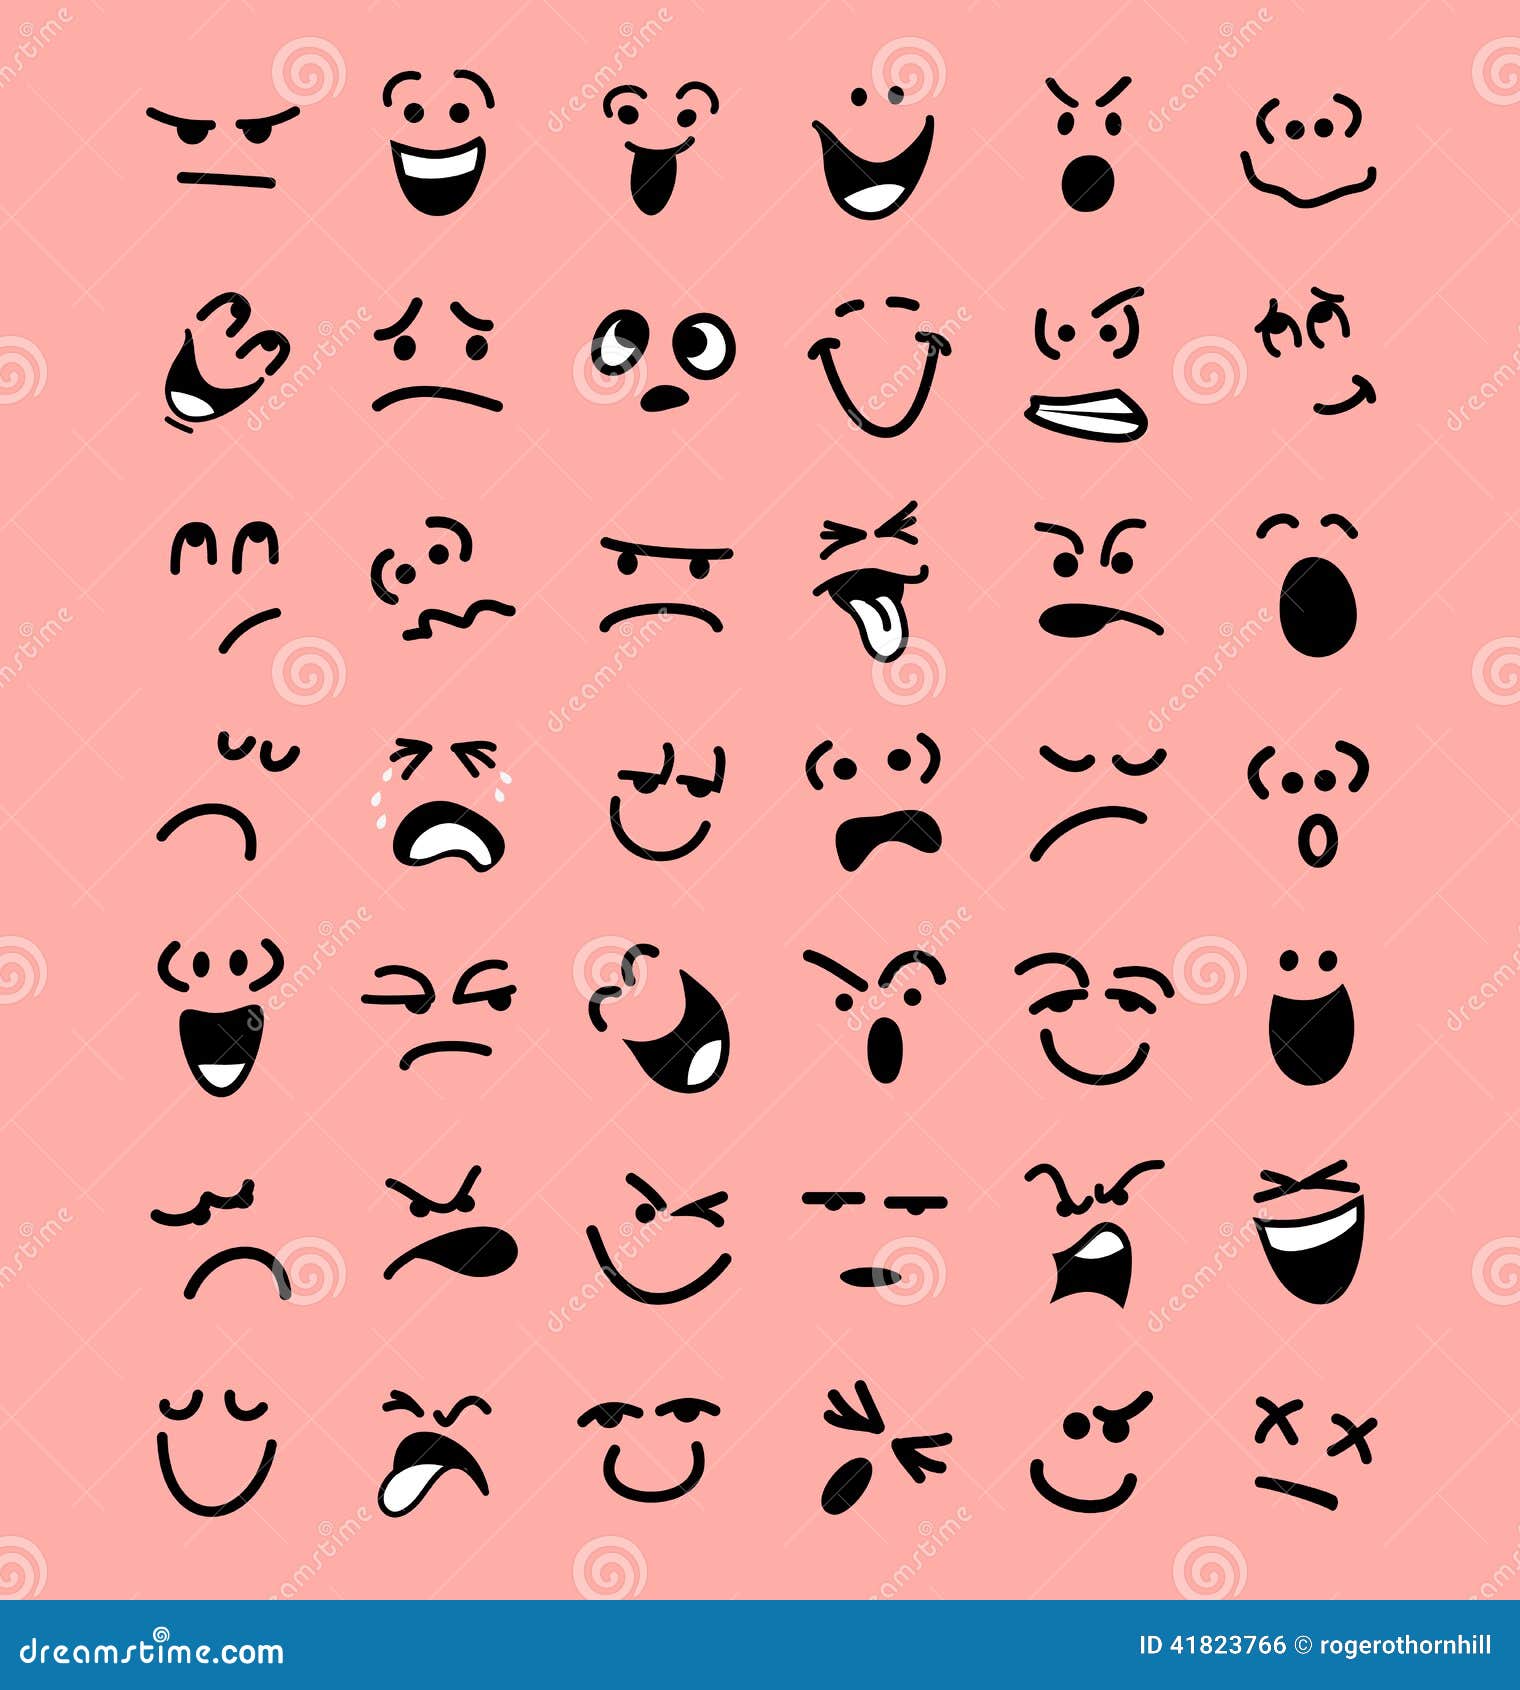 Emotions Cartoon Facial Expressions Stock Illustrations – 4,641 Emotions  Cartoon Facial Expressions Stock Illustrations, Vectors & Clipart -  Dreamstime